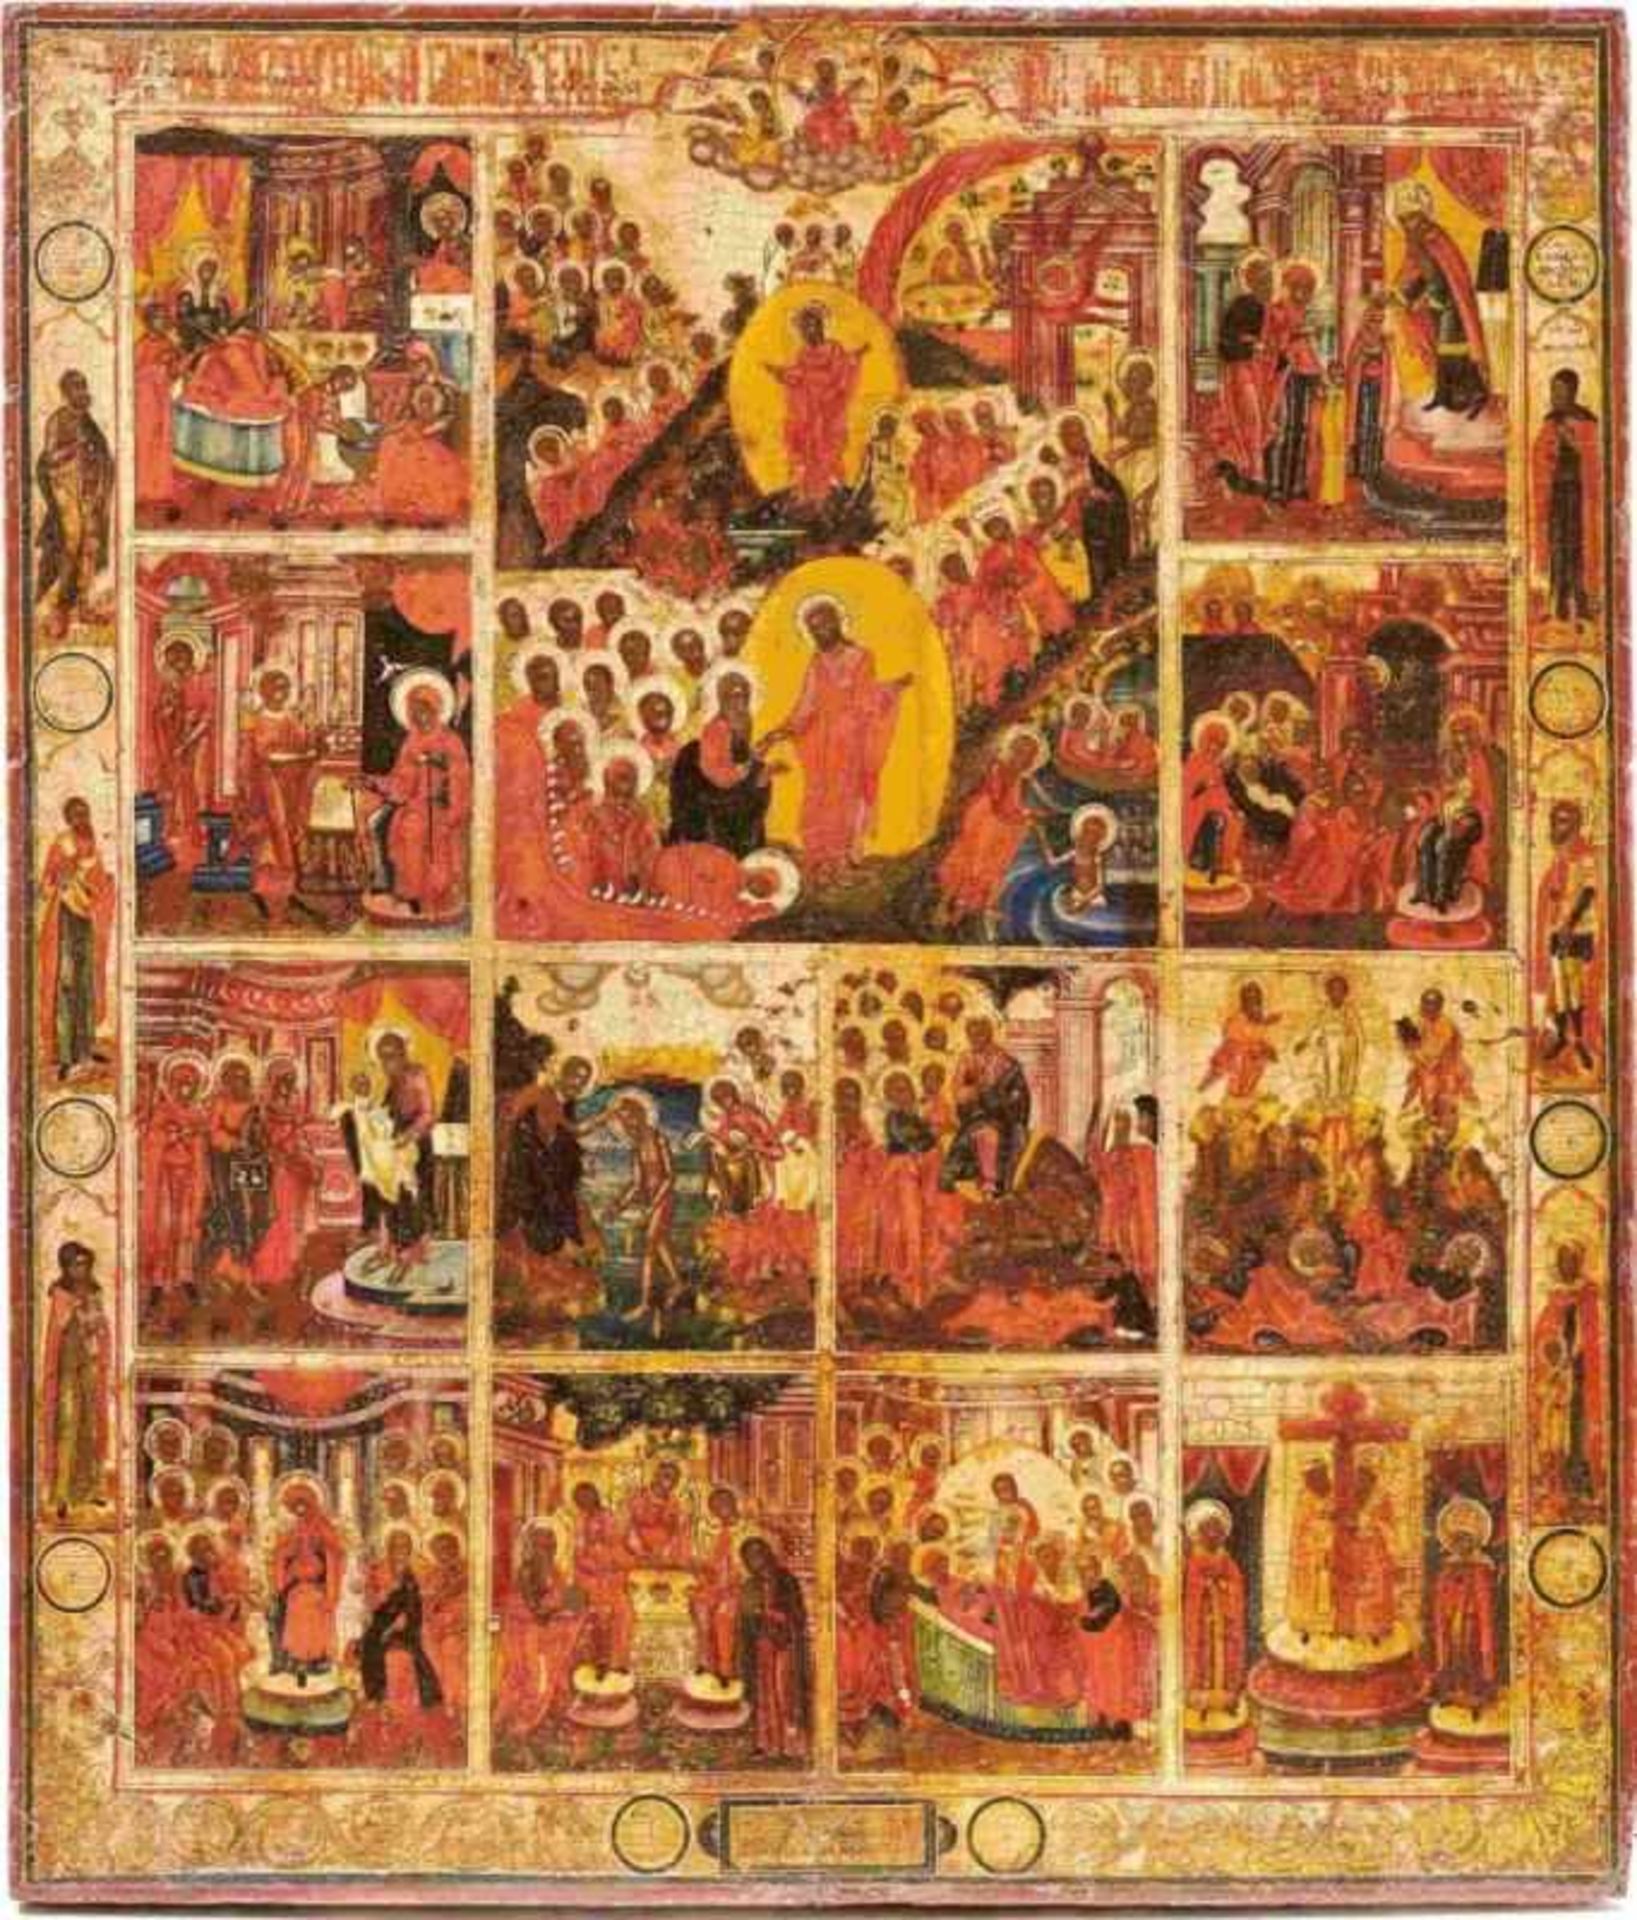 Große FesttagsikoneRussland, 19. Jh.Darstellung von Christi Höllenfahrt und Auferstehung, umgeben